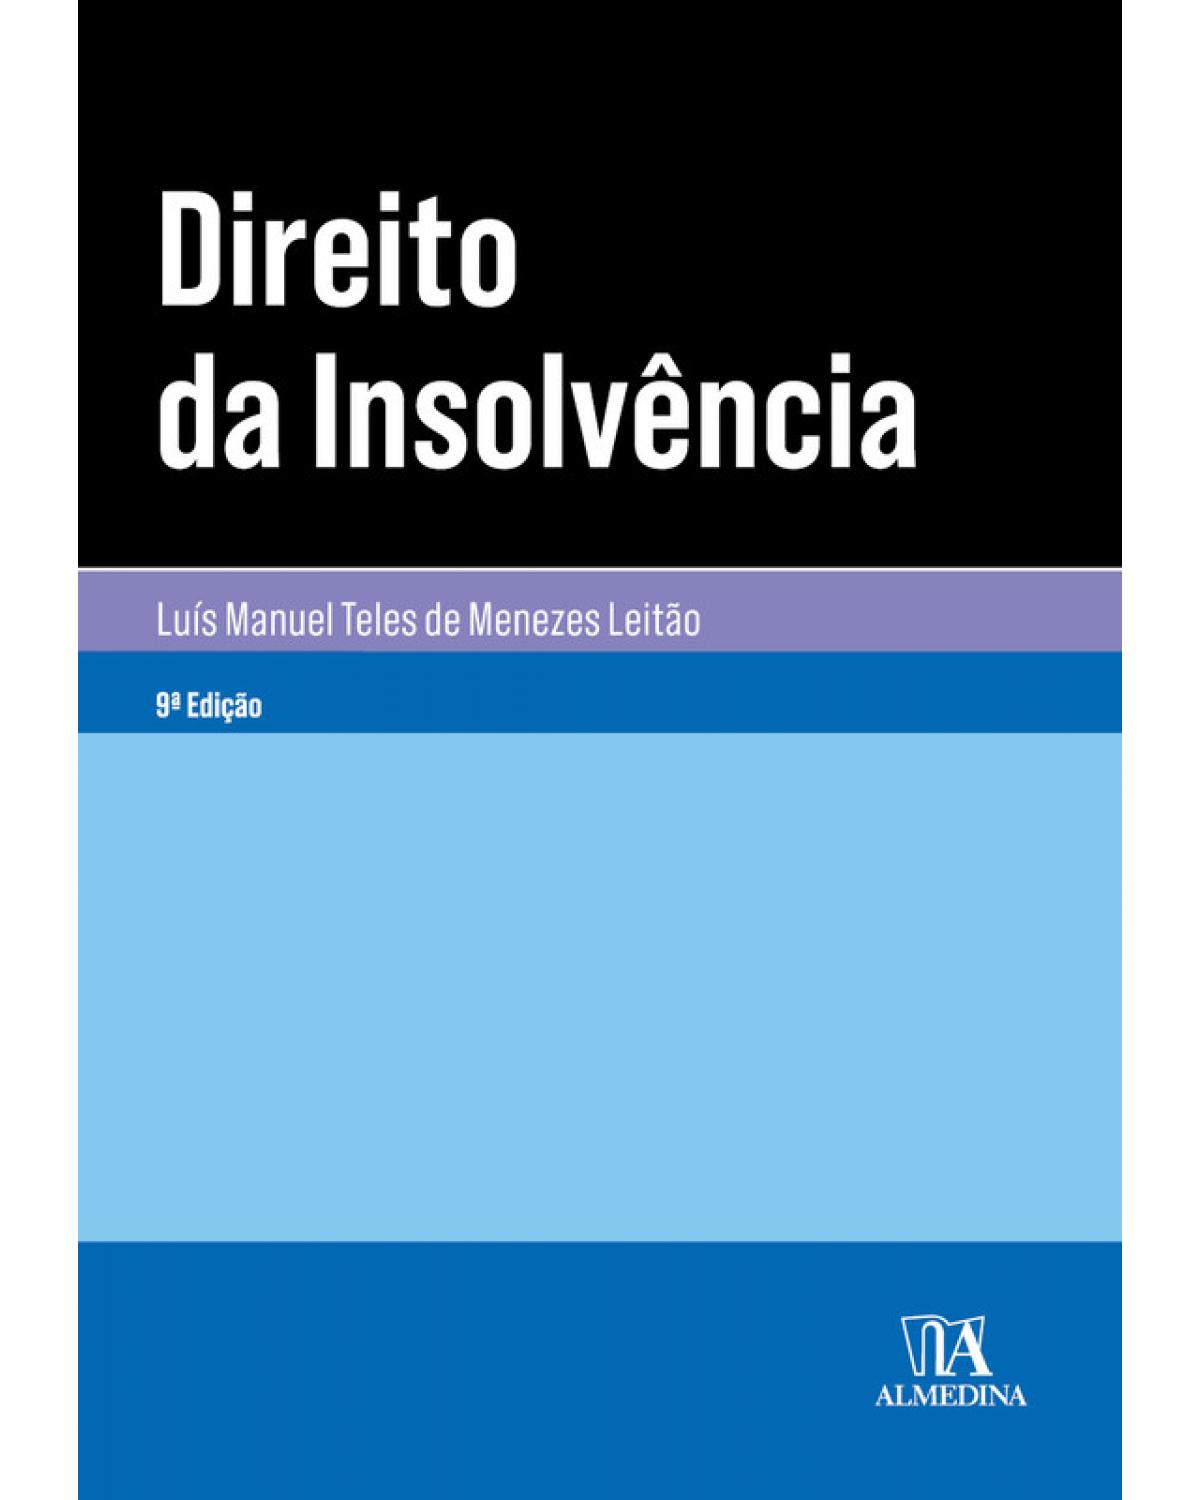 Direito da insolvência - 9ª Edição | 2019